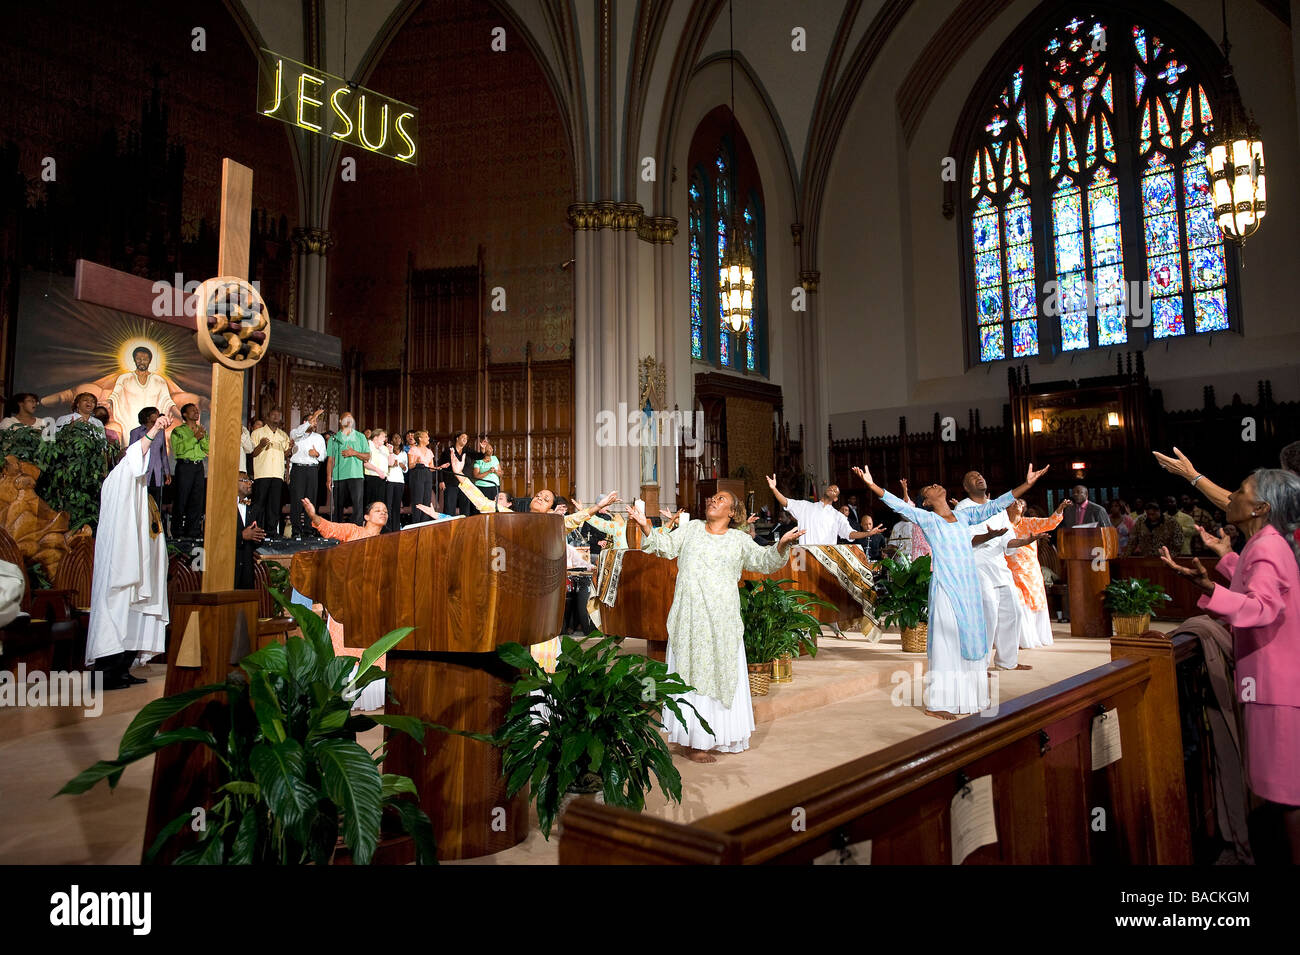 United States, Illinois, Chicago, Sunday service at the Saint Sabina catholic church Stock Photo